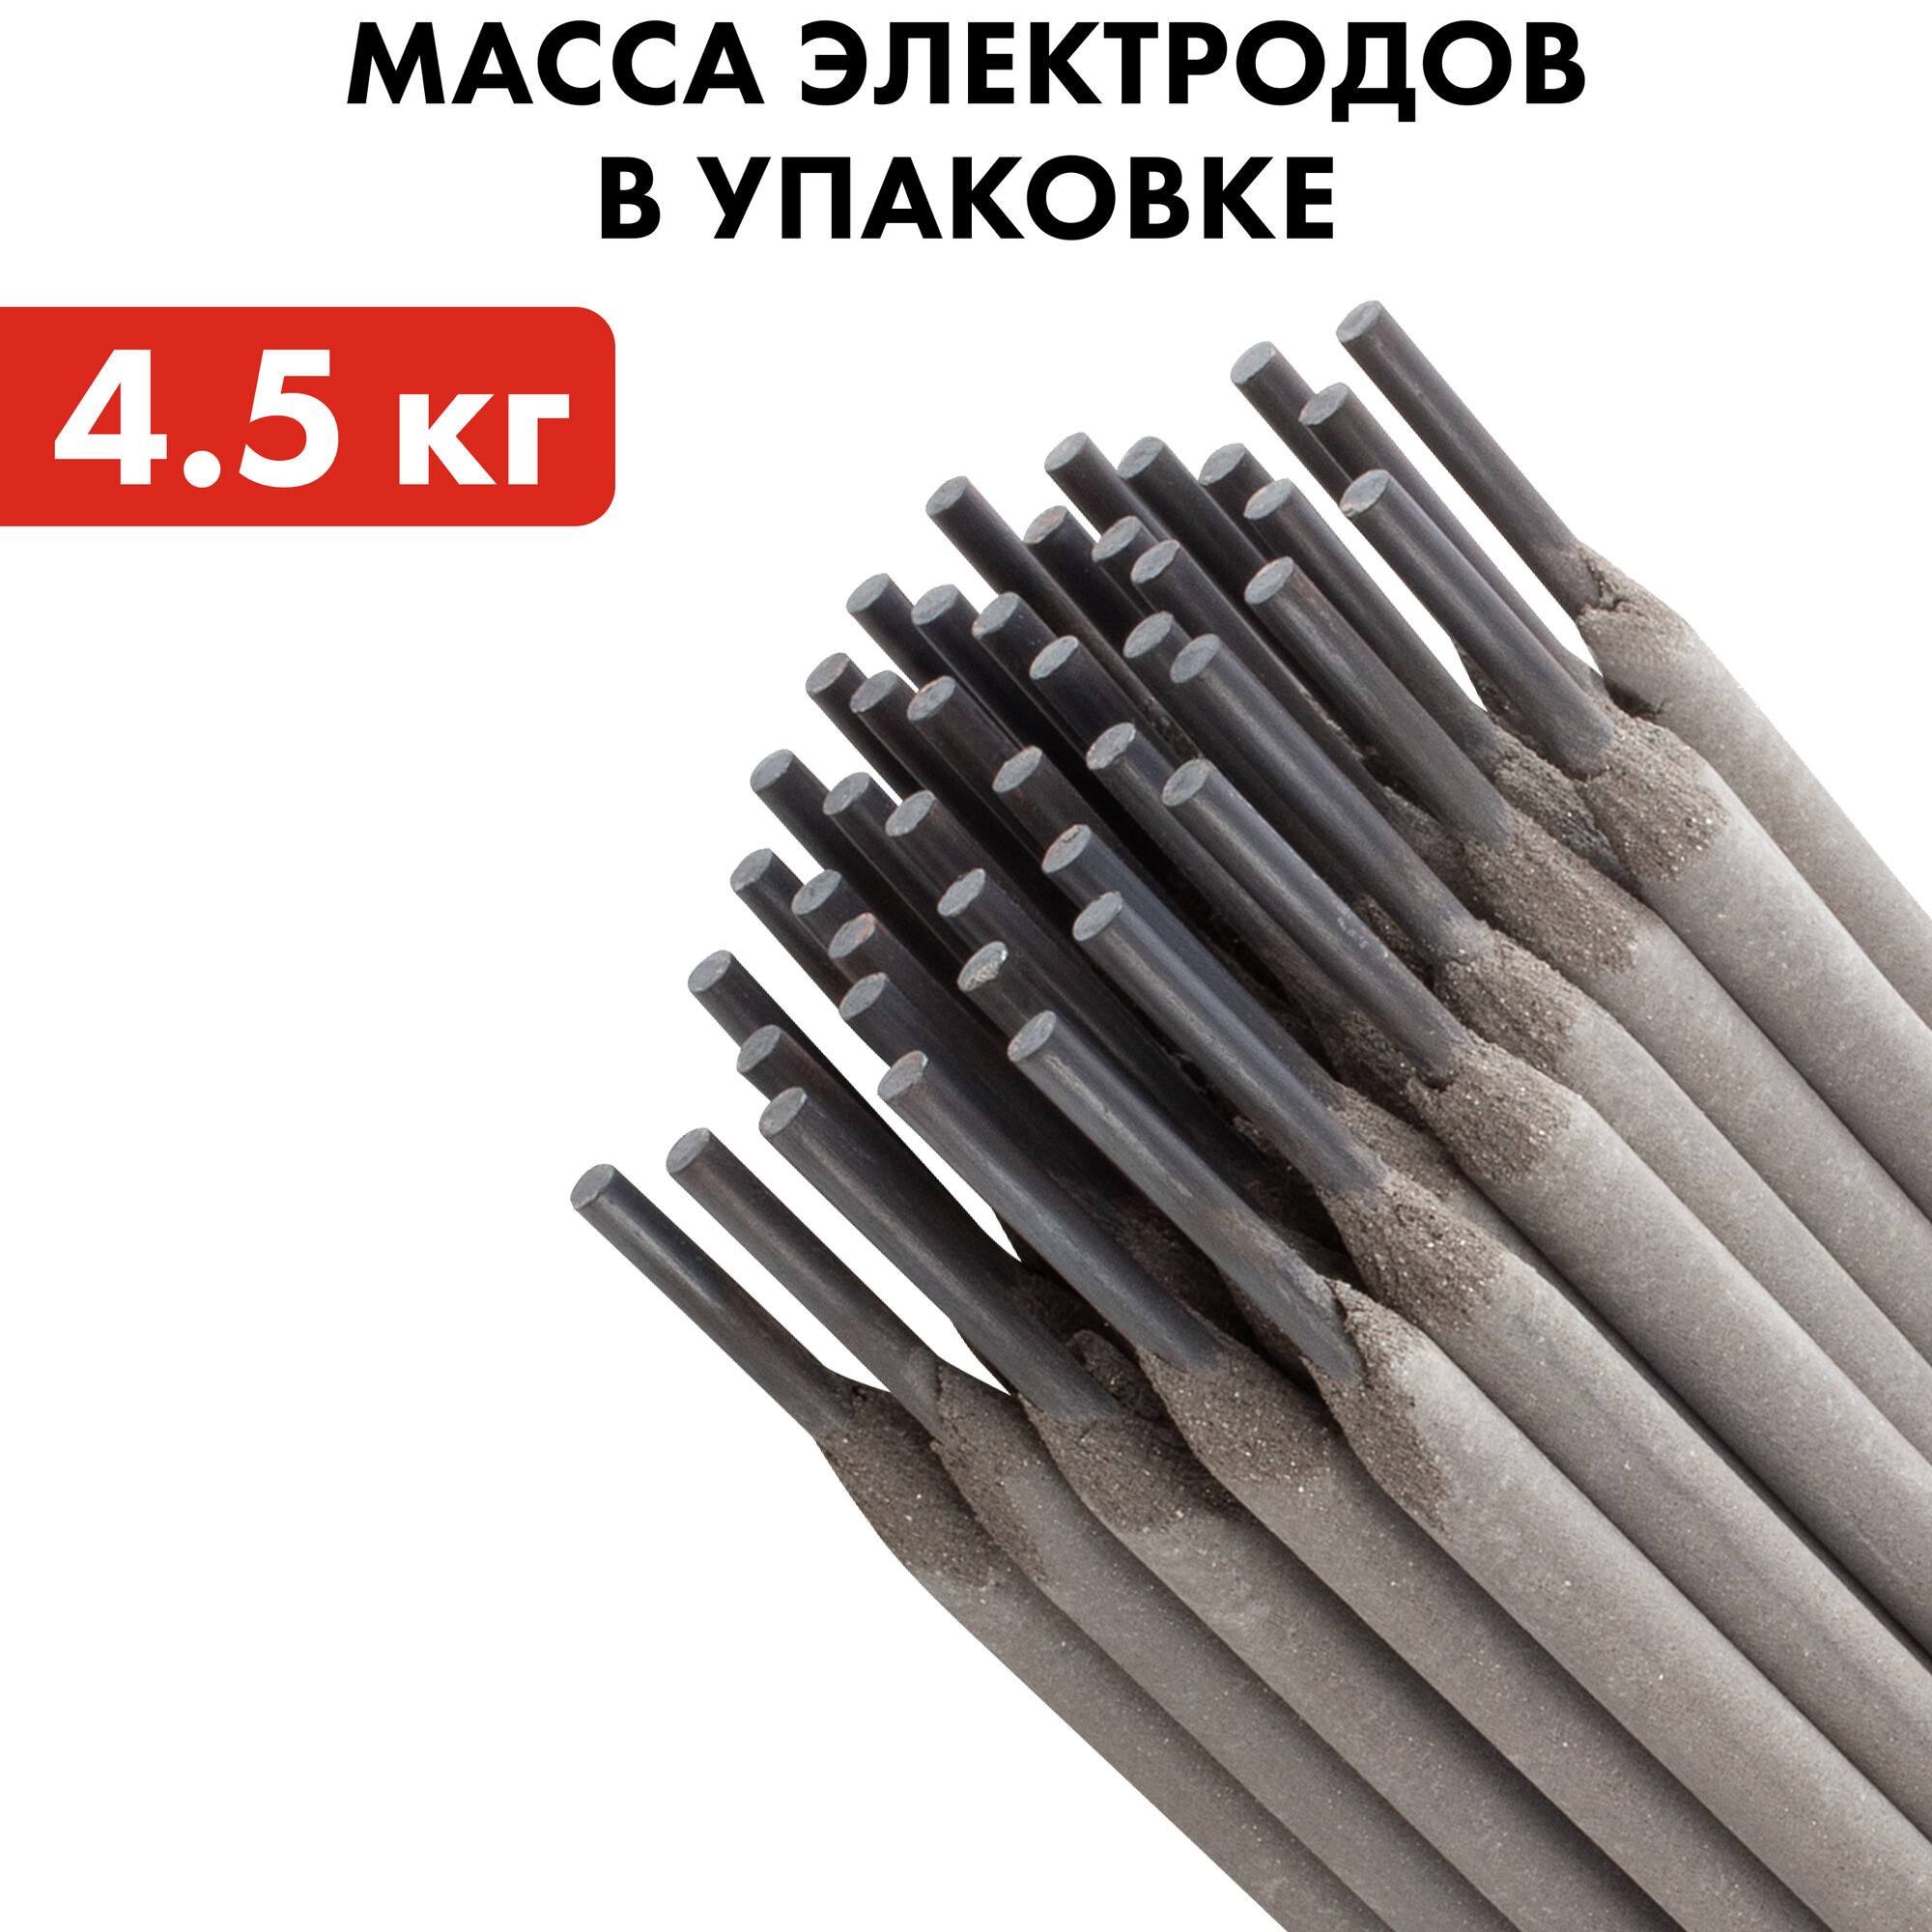 Электроды сварочные QUATTRO ELEMENTI рутиловые, 3,2 мм, масса 4,5 кг (770-445)